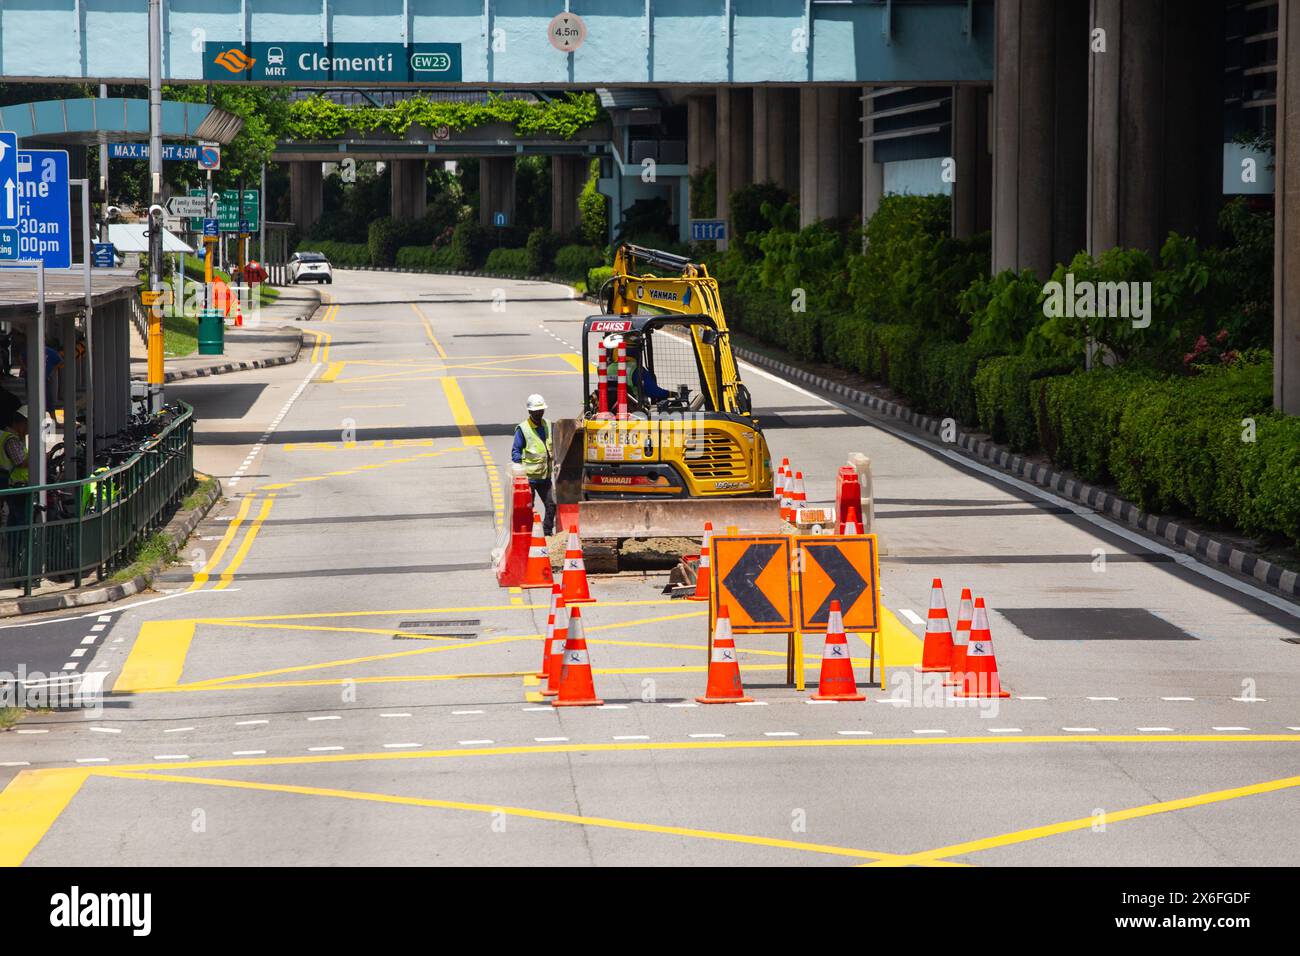 Miniescavatori che eseguono lavori stradali in mezzo alla strada. I segnali di avvertimento sono disposti per deviare i veicoli in arrivo a sinistra e a destra. Singapore. Foto Stock